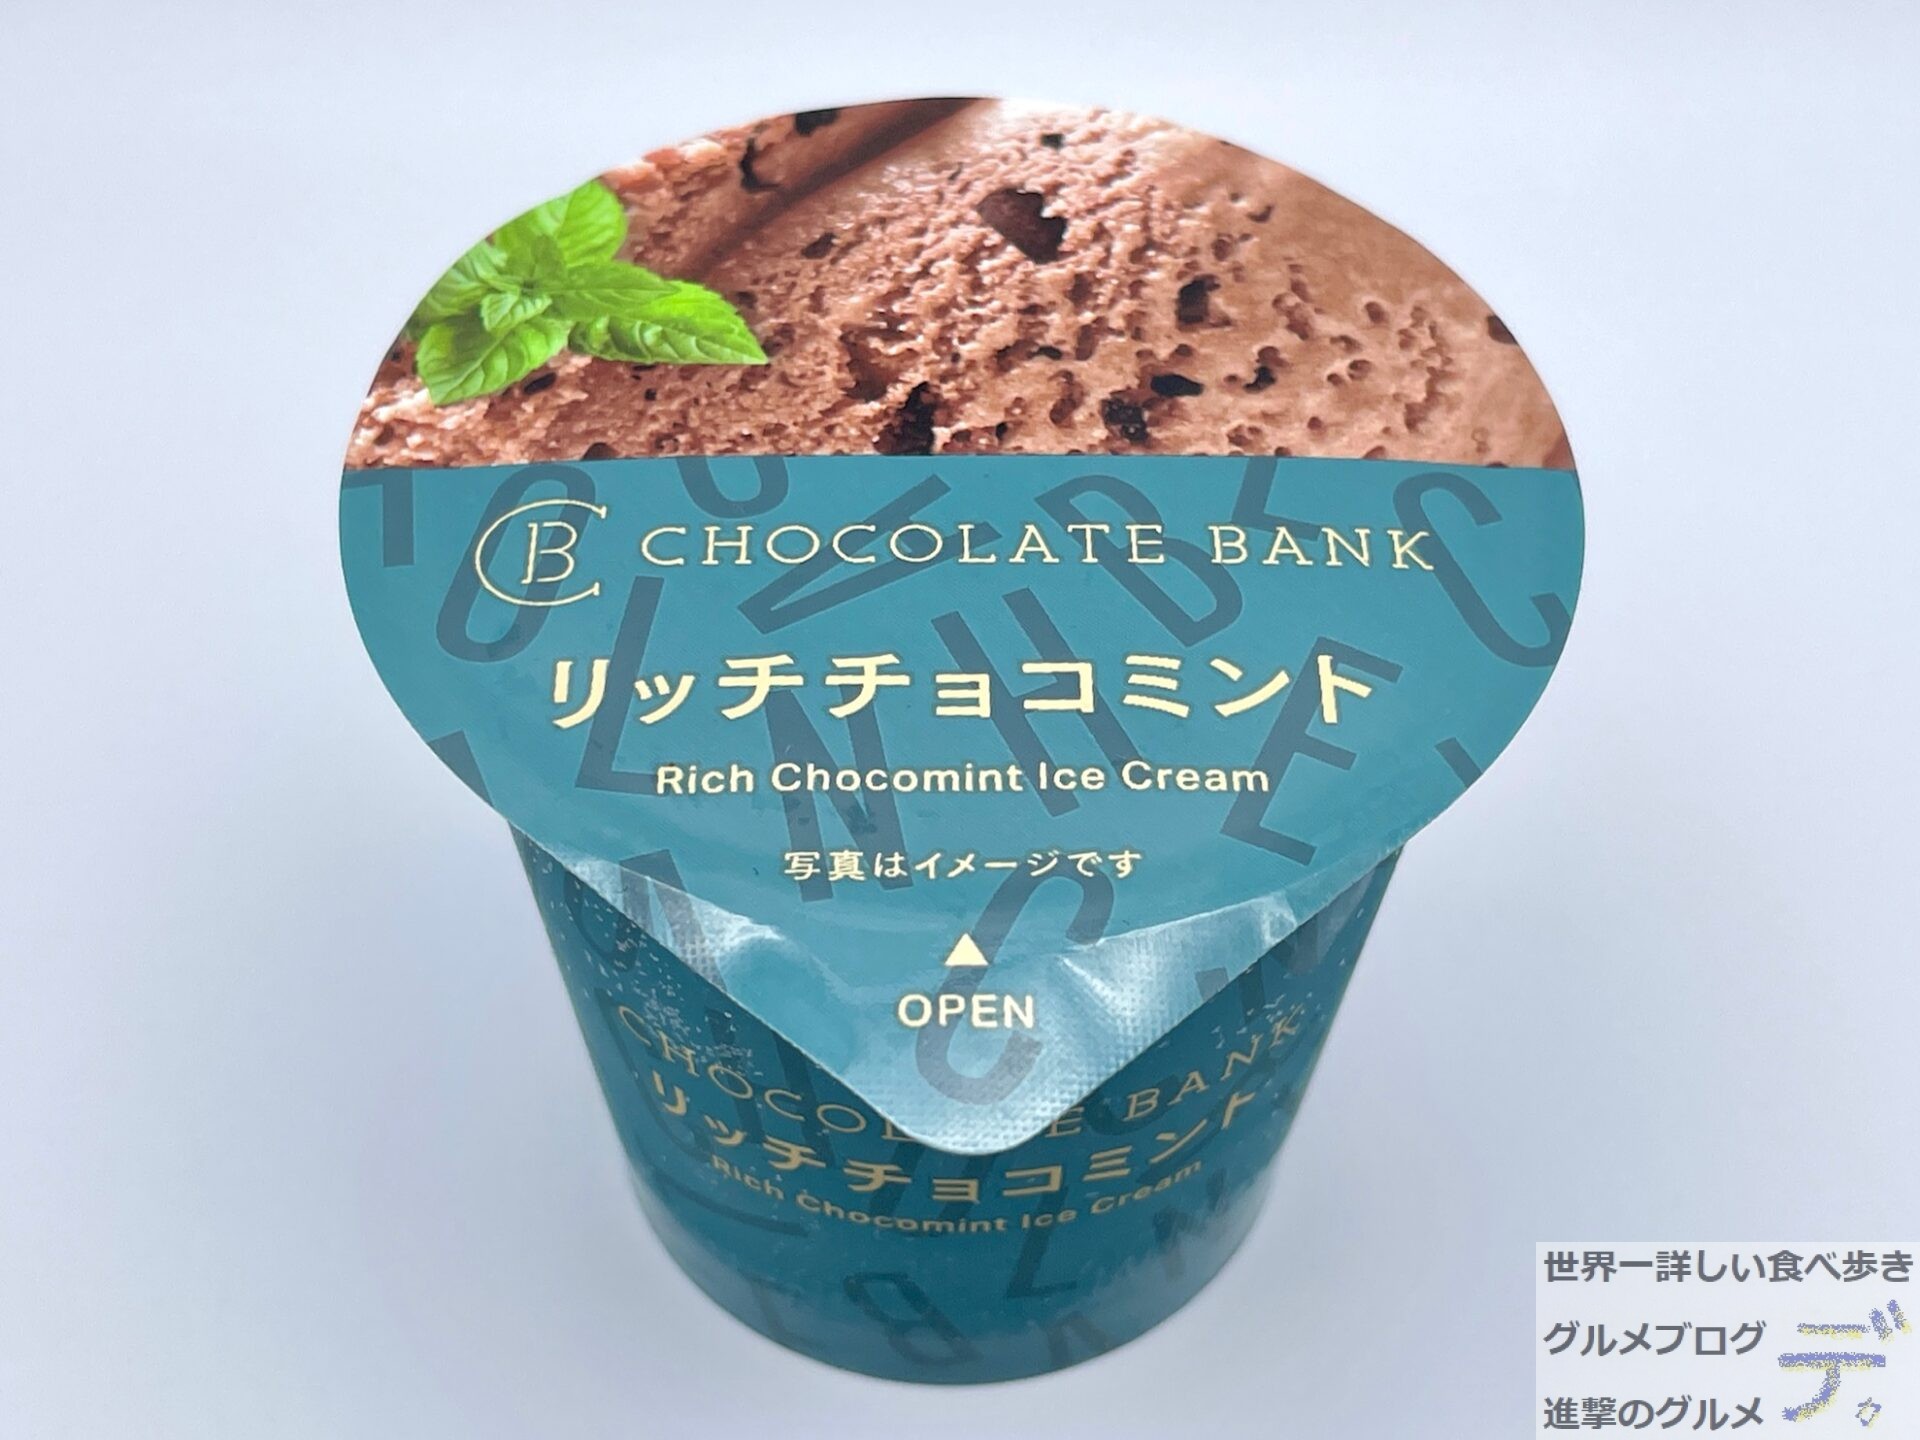 セブンイレブンの新作アイス チョコレートバンク リッチチョコミント 進撃のグルメ Yahoo Japan クリエイターズプログラム